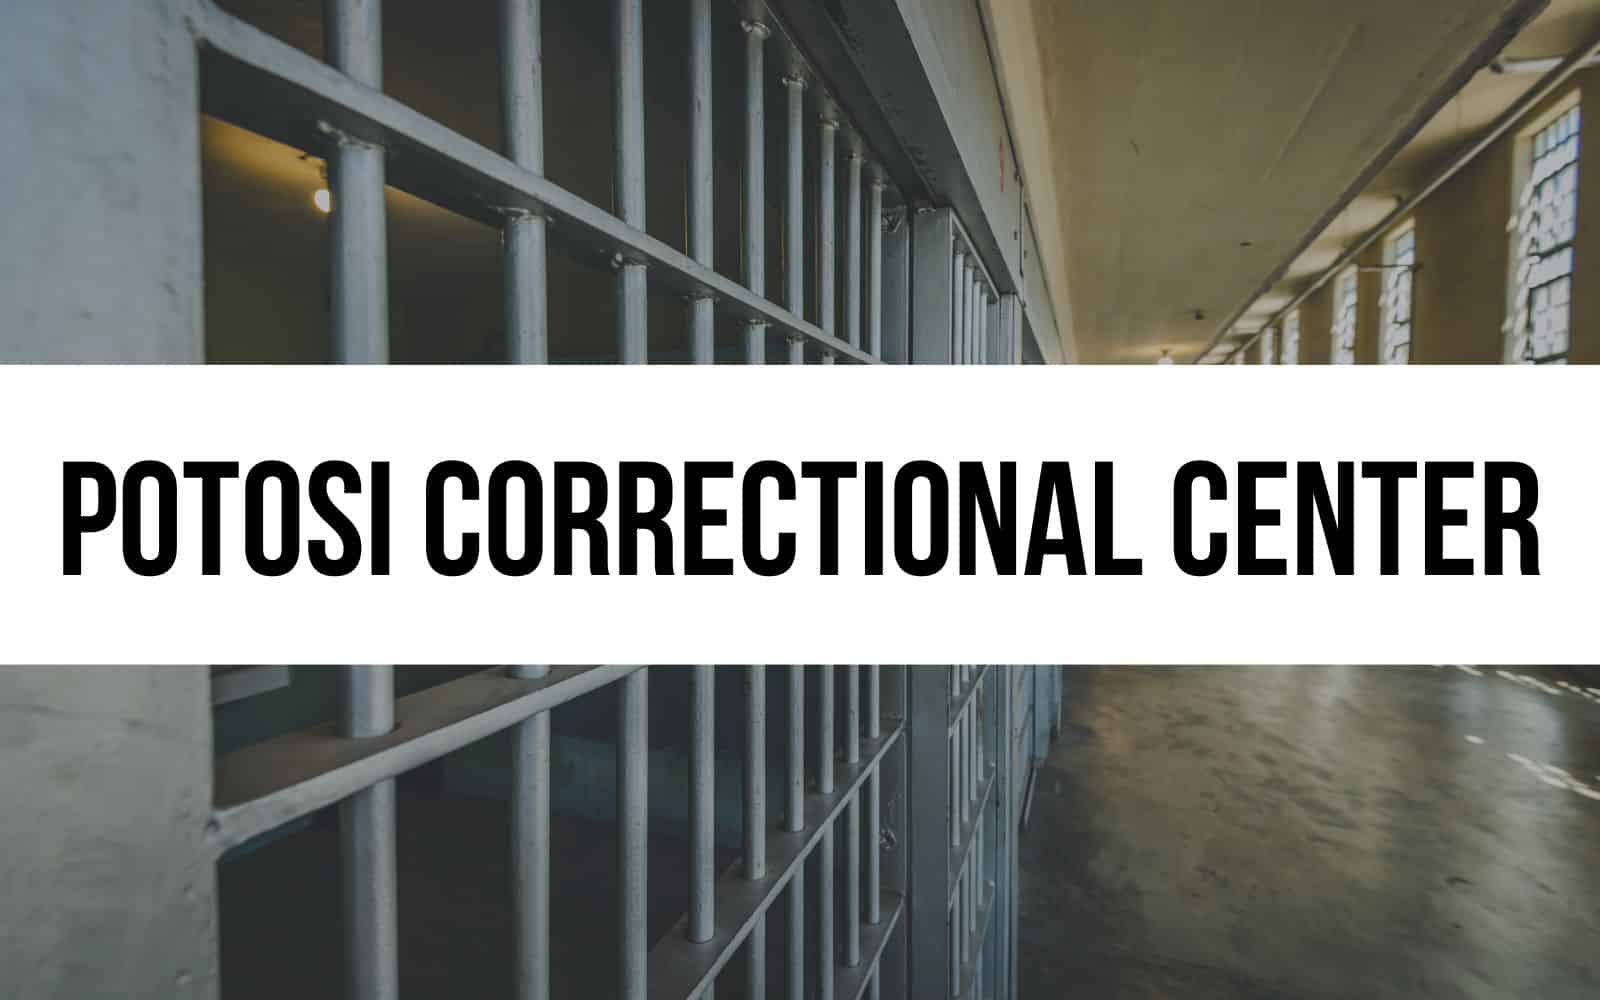 Potosi Correctional Center